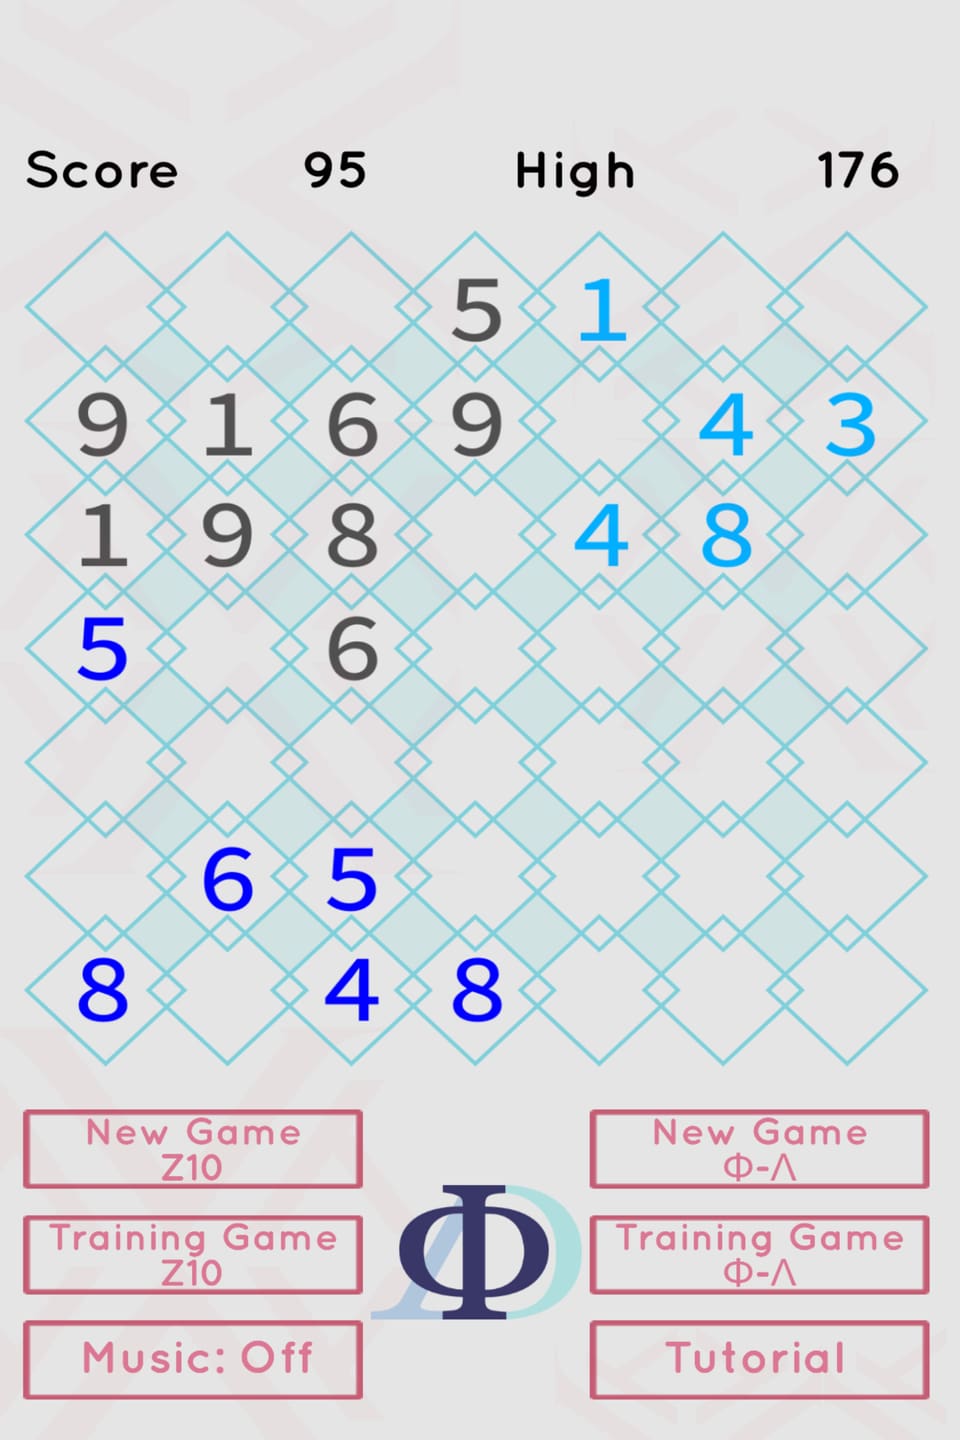 Hellblau: 1+4+4+8+3=20; Dunkelblau 5+6+5+8+4+8=36 (4 fehlen --> bzw. 14: ich schliesse 8+6 der dunkelblauen Gruppe an).